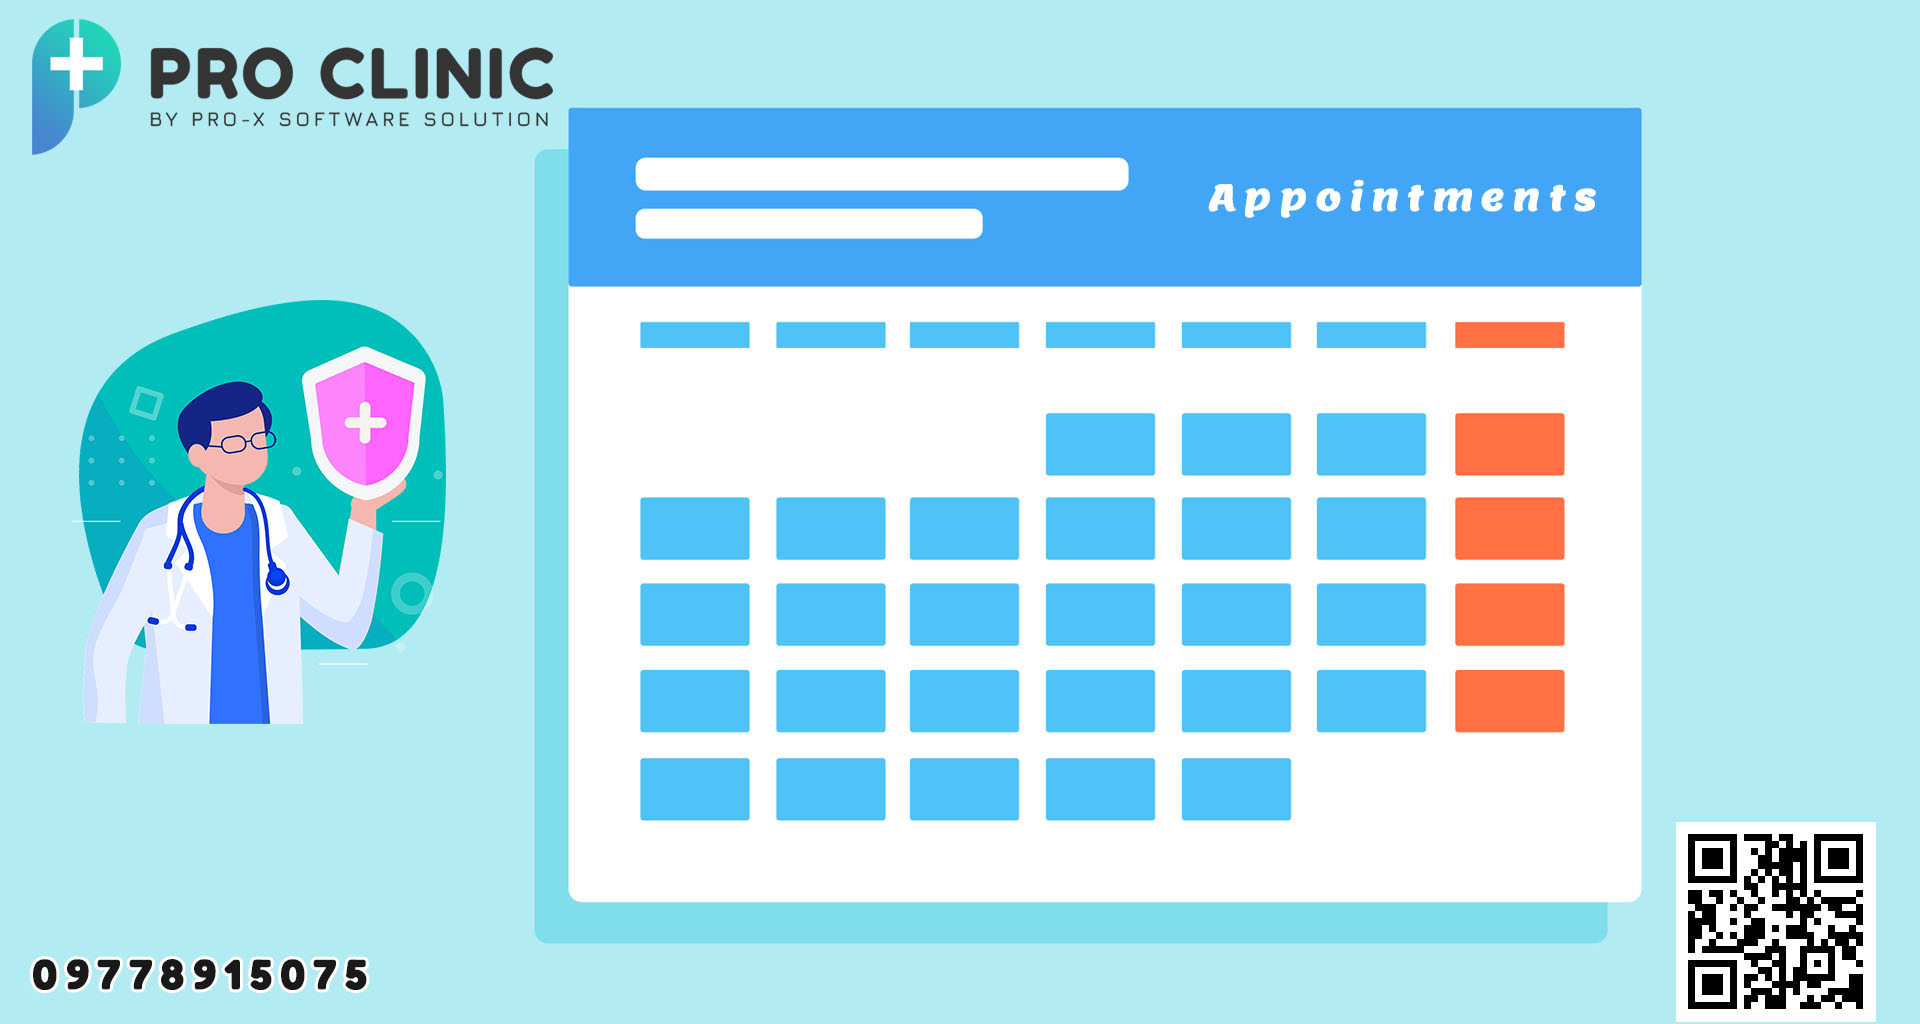 Pro Clinic တွင် ဆေးခန်းများ အတွက် Appointment/Booking ကို ထပ်တိုးပေးထားပါသည်